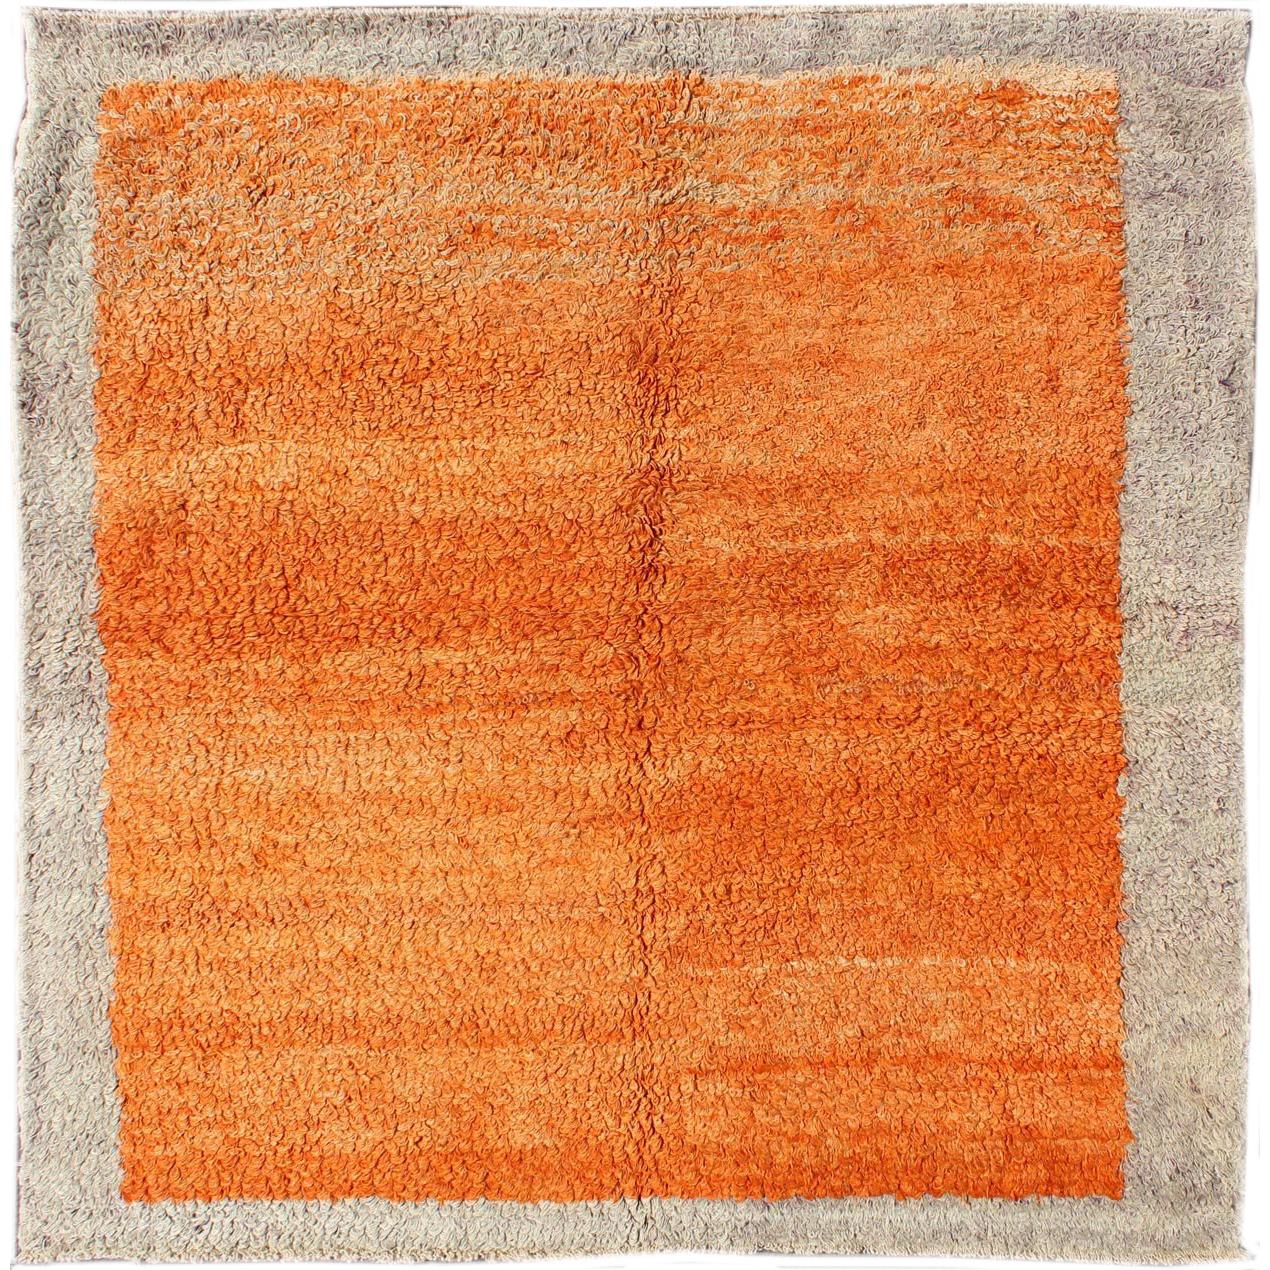 Quadratischer Tulu Vintage-Teppich in massivem Orange und Taupe mit minimalistischem Design